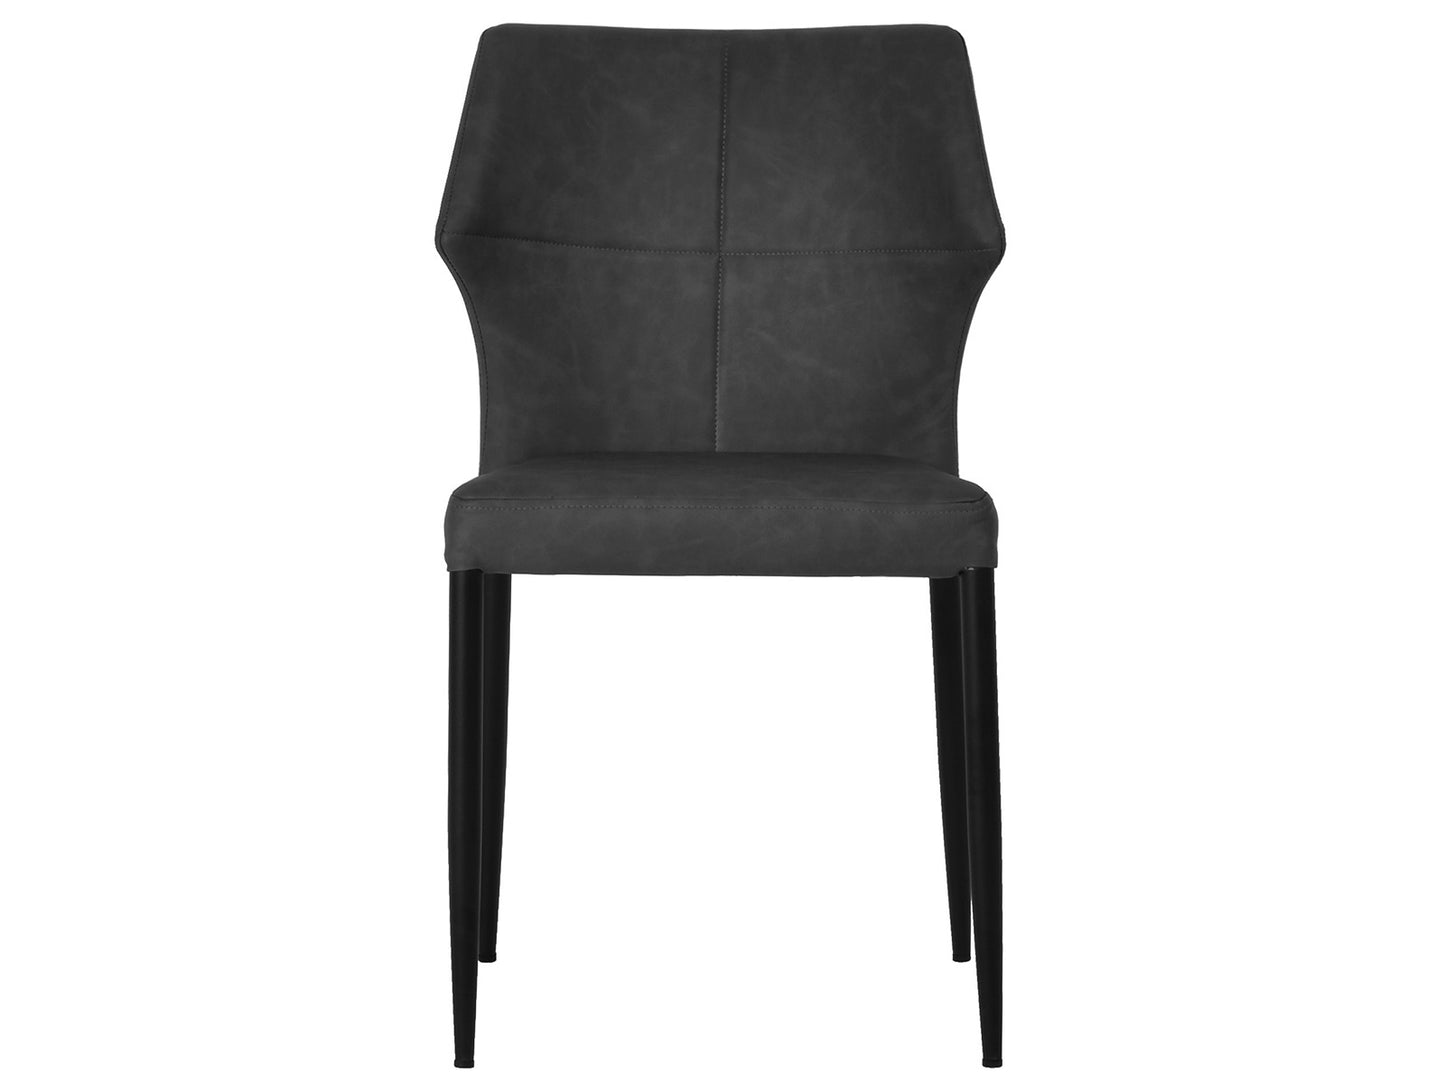 4 stk. Runa Spisebordsstole, sort PU på sæde/ryg, sort metal ben.